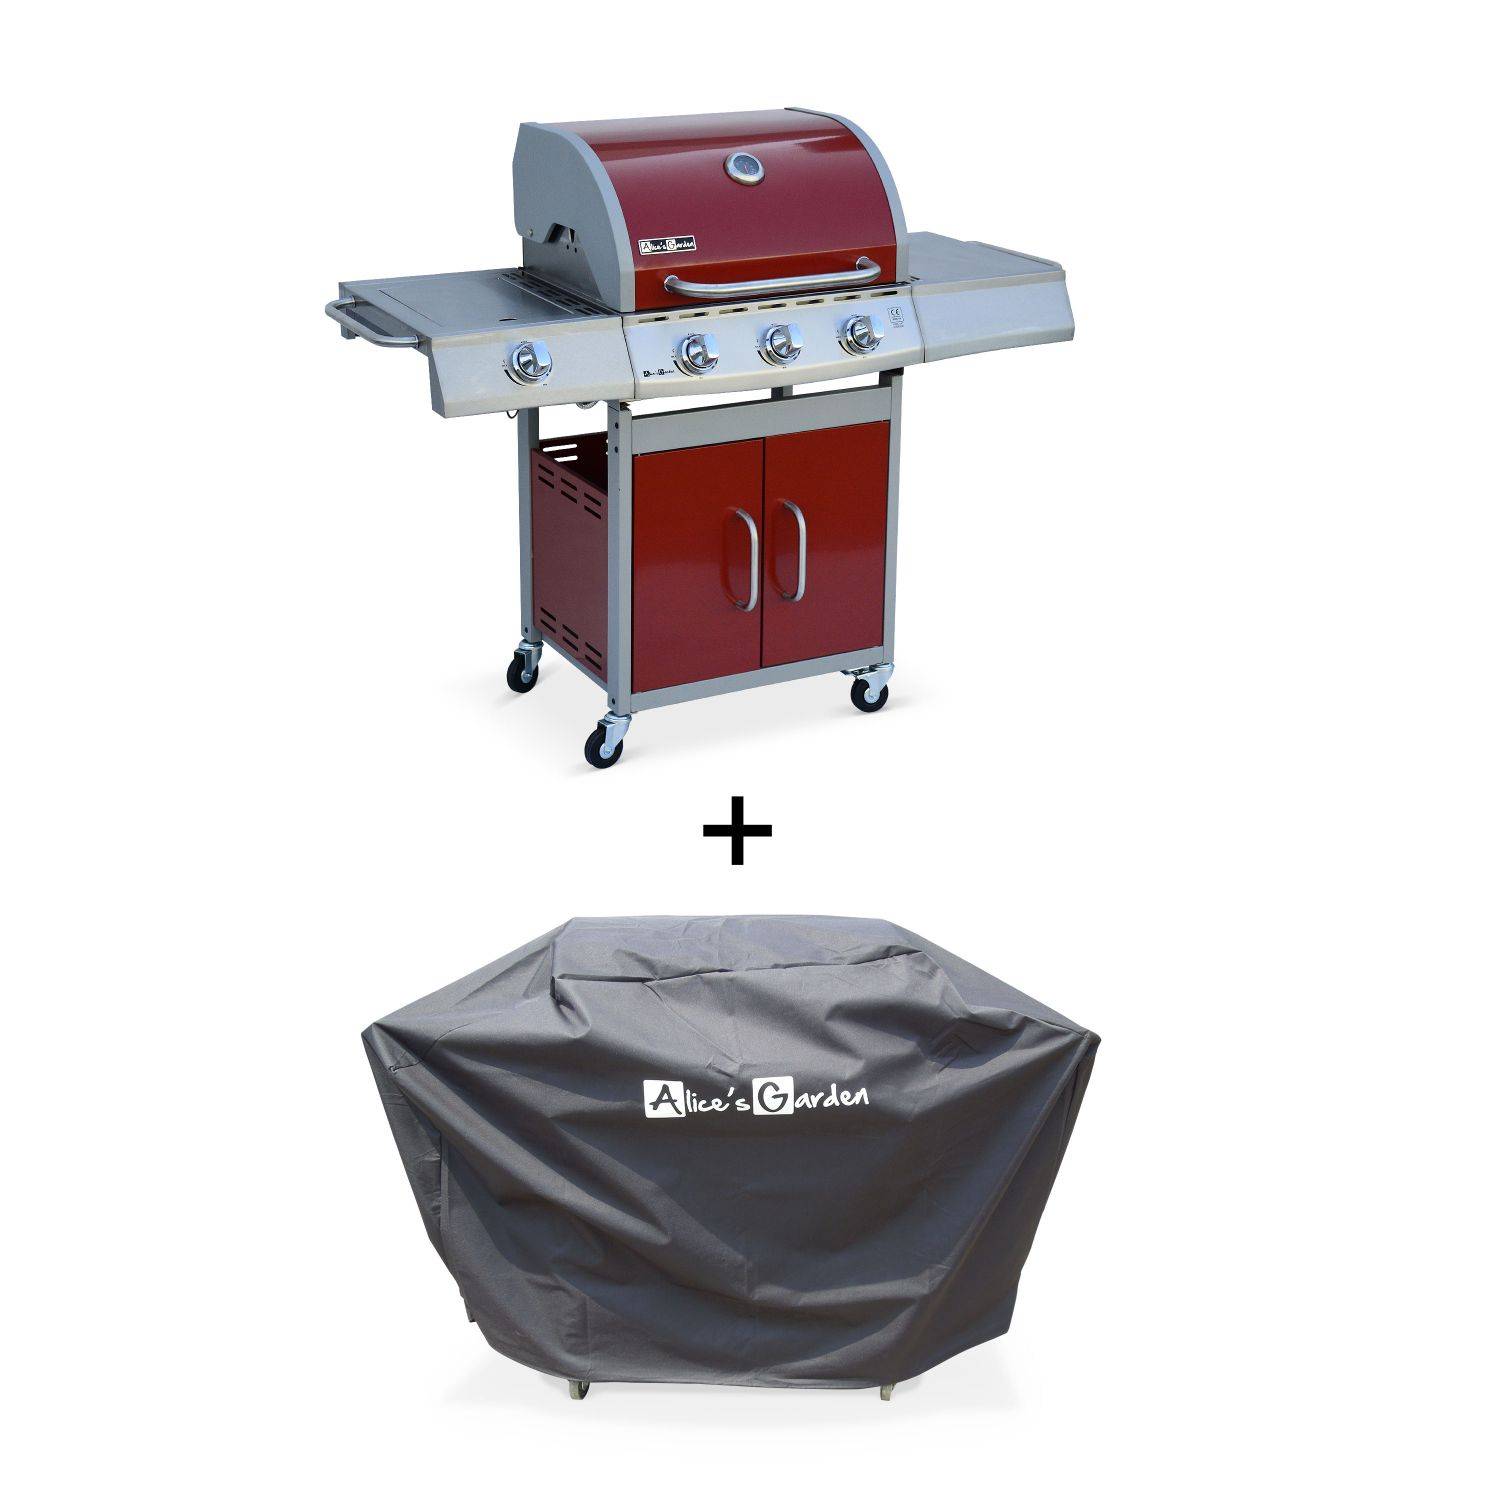 Barbecue gaz inox 14kW – Richelieu rouge 3 brûleurs + 1 feu latéral, côté grill et côté plancha, Connecteur gaz G1/2 et housse de protection inclus Photo1